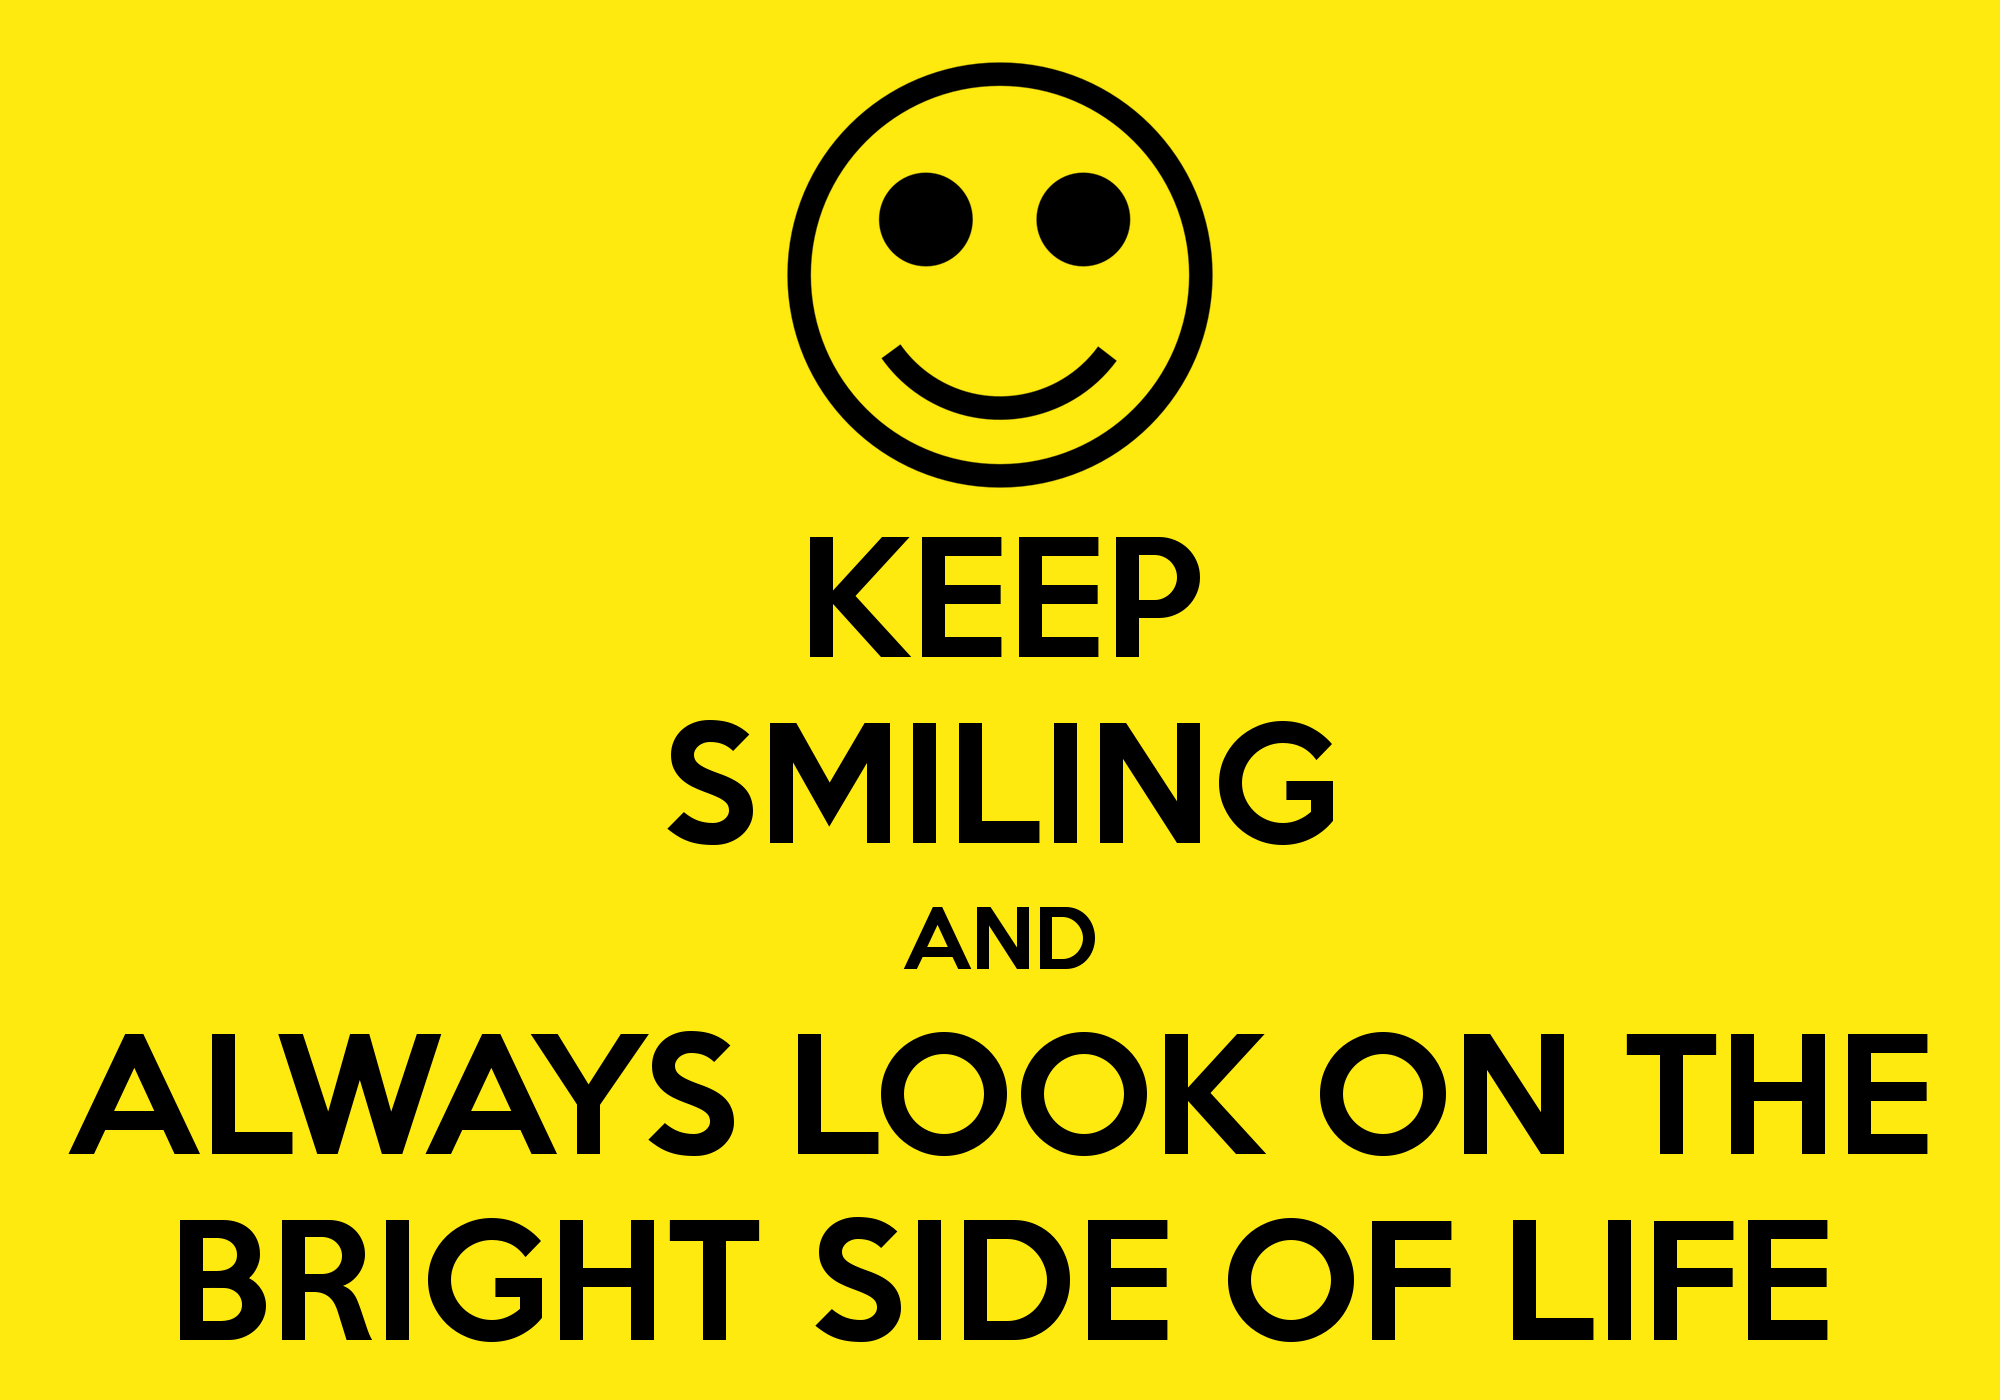 Sonríe cada día y 'Always look on the bright side of life' .